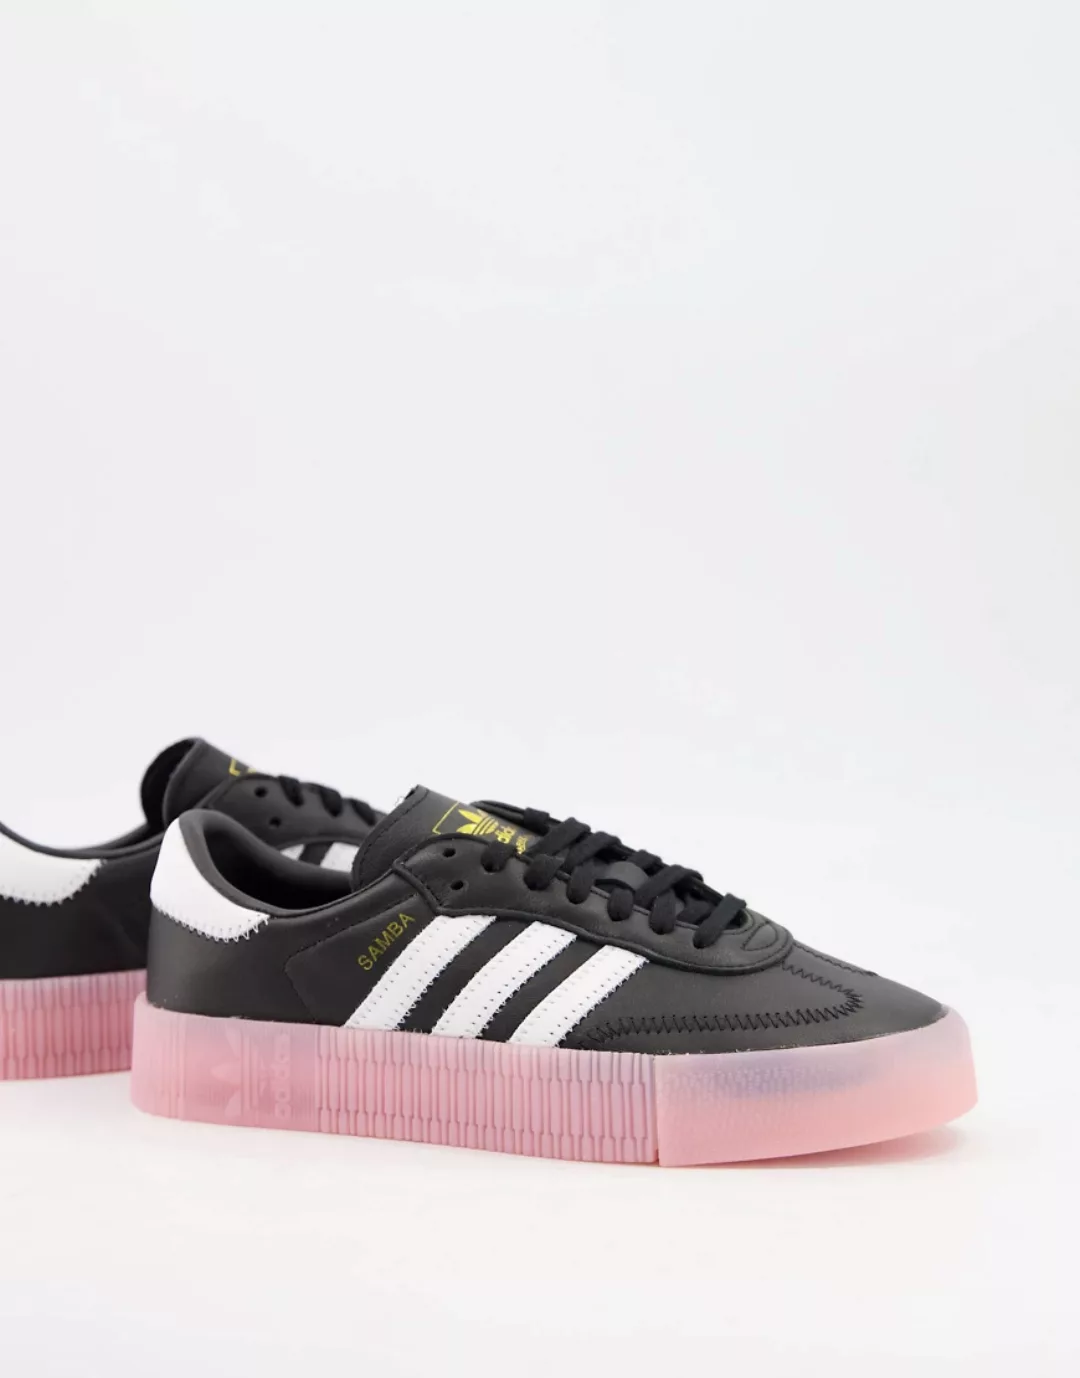 Adidas Originals Sambarose Sportschuhe EU 38 2/3 Core Black / Ftwr White / günstig online kaufen